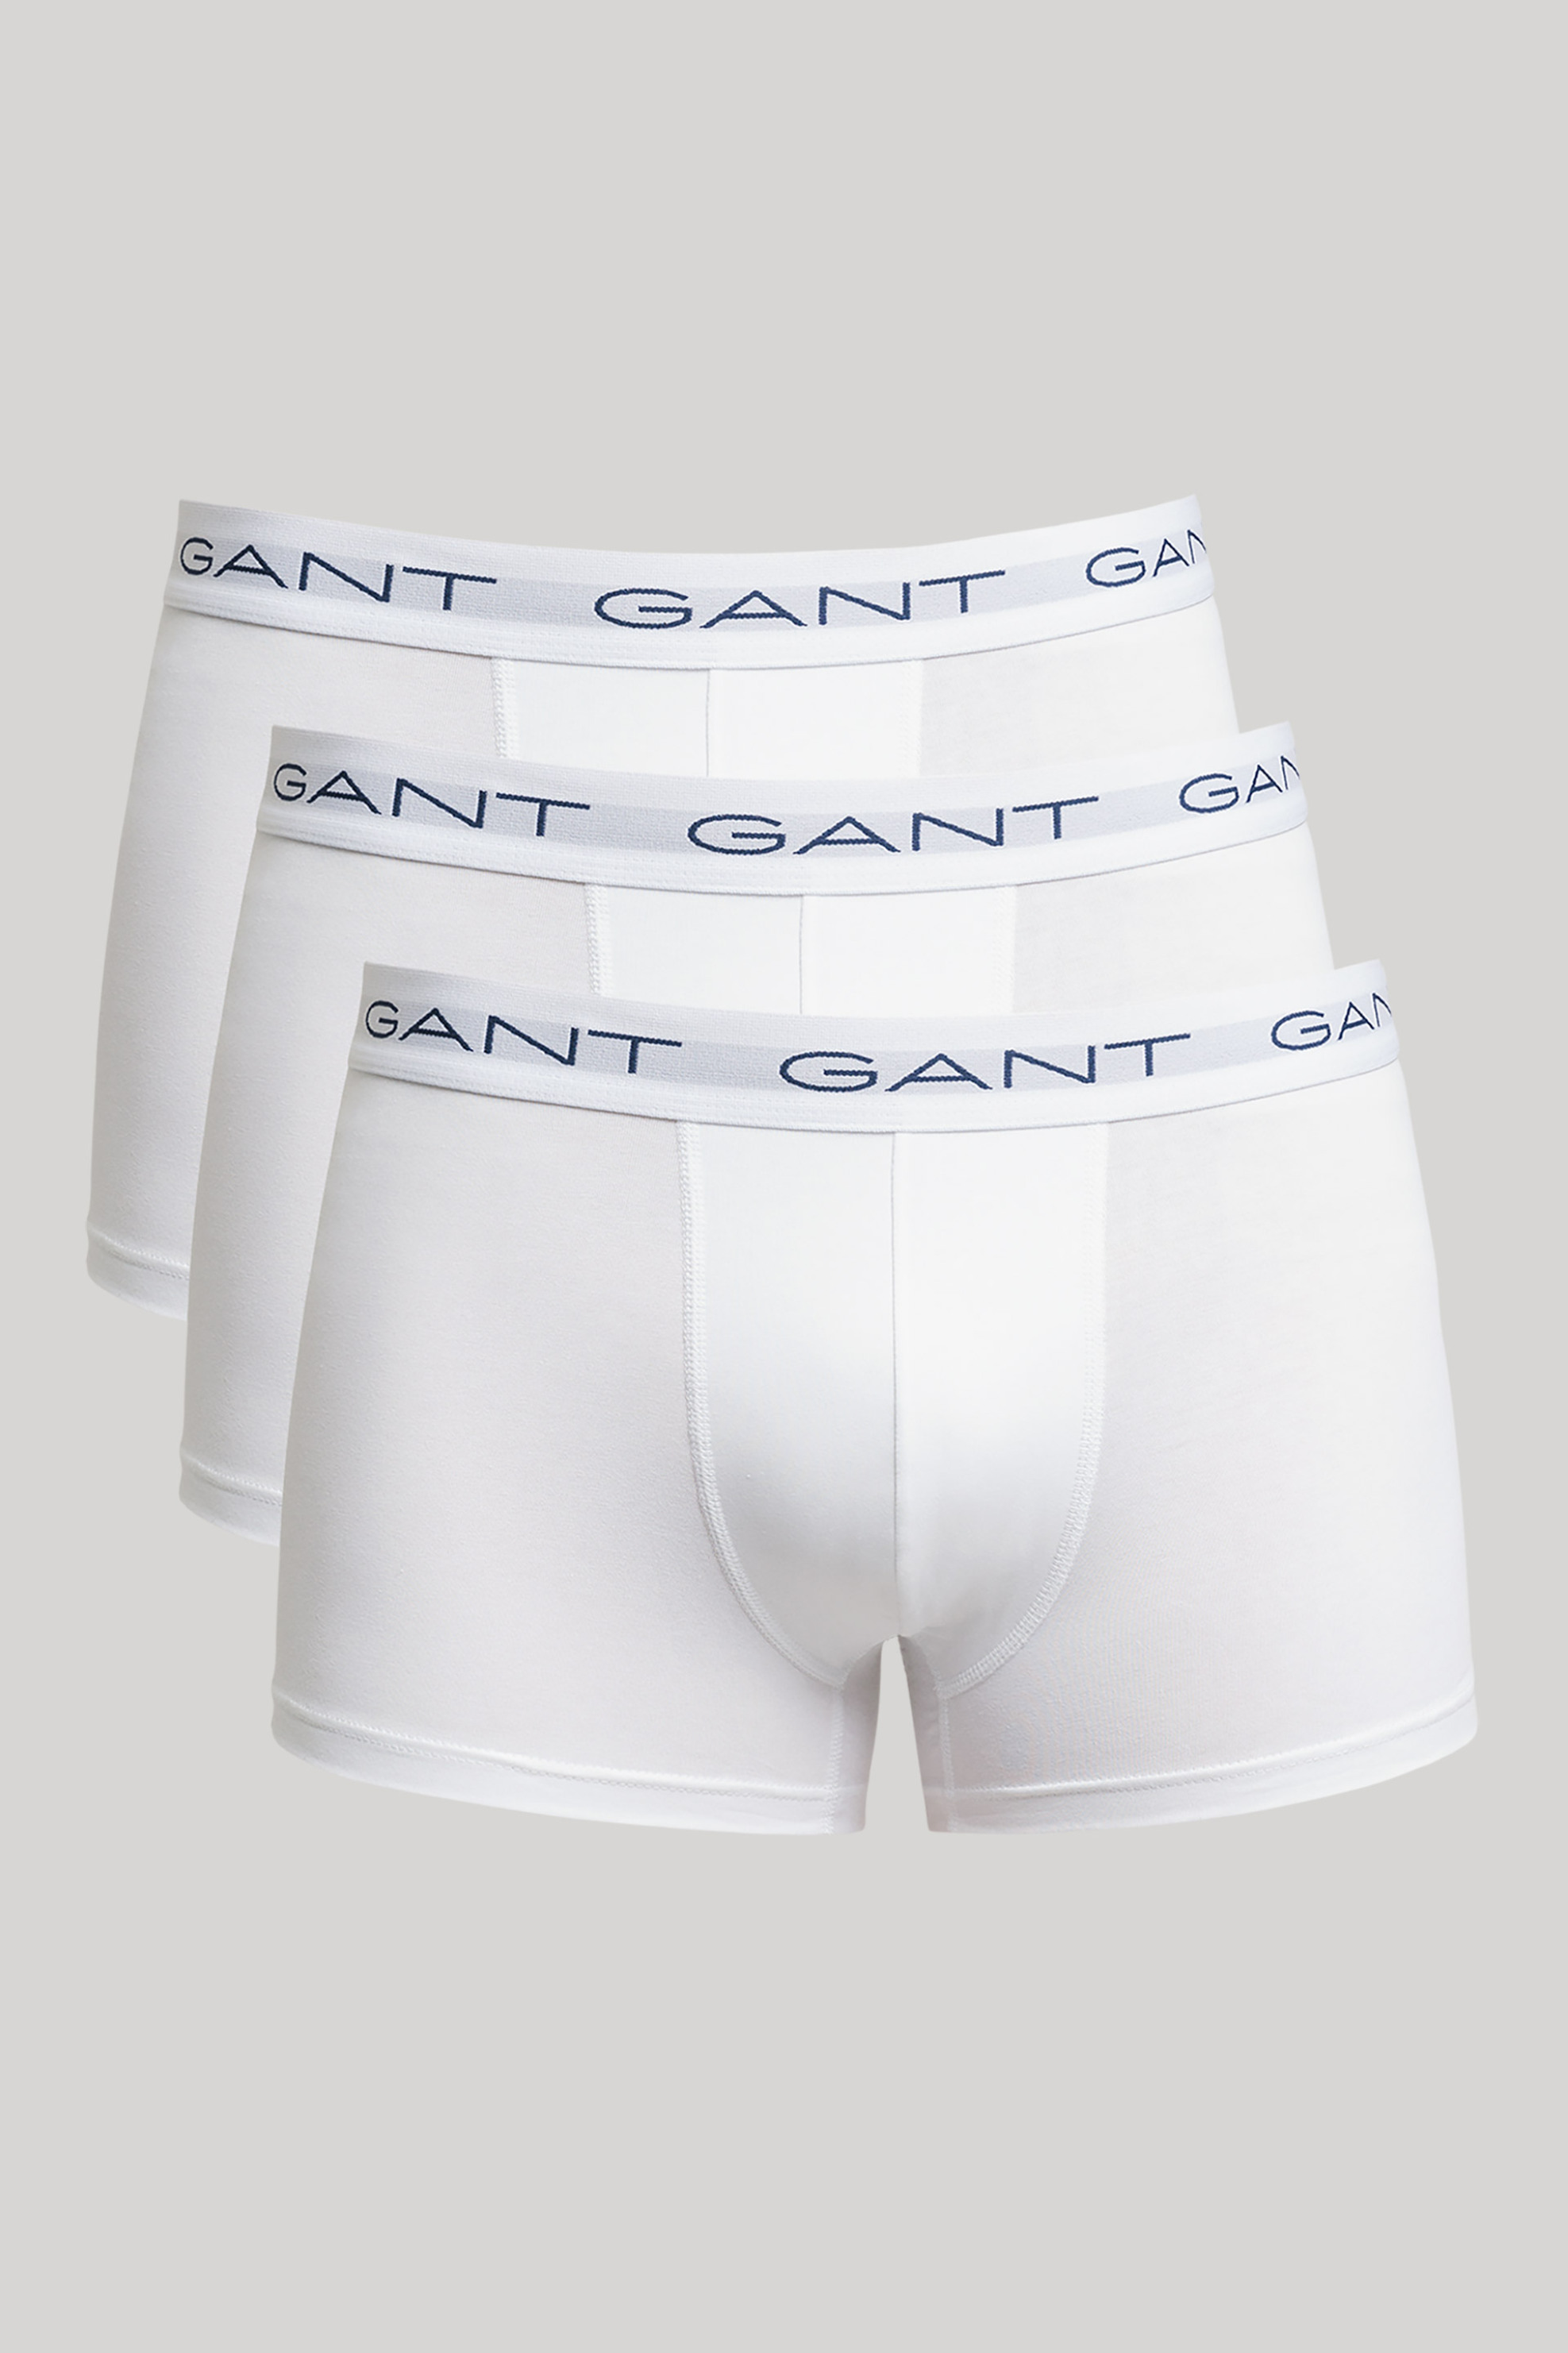 Ανδρική Μόδα > Ανδρικά Ρούχα > Ανδρικά Εσώρουχα > Ανδρικά Εσώρουχα Σετ Gant σετ εσωρούχων boxer με λογότυπο (3 τεμάχια) - 900003003 Λευκό